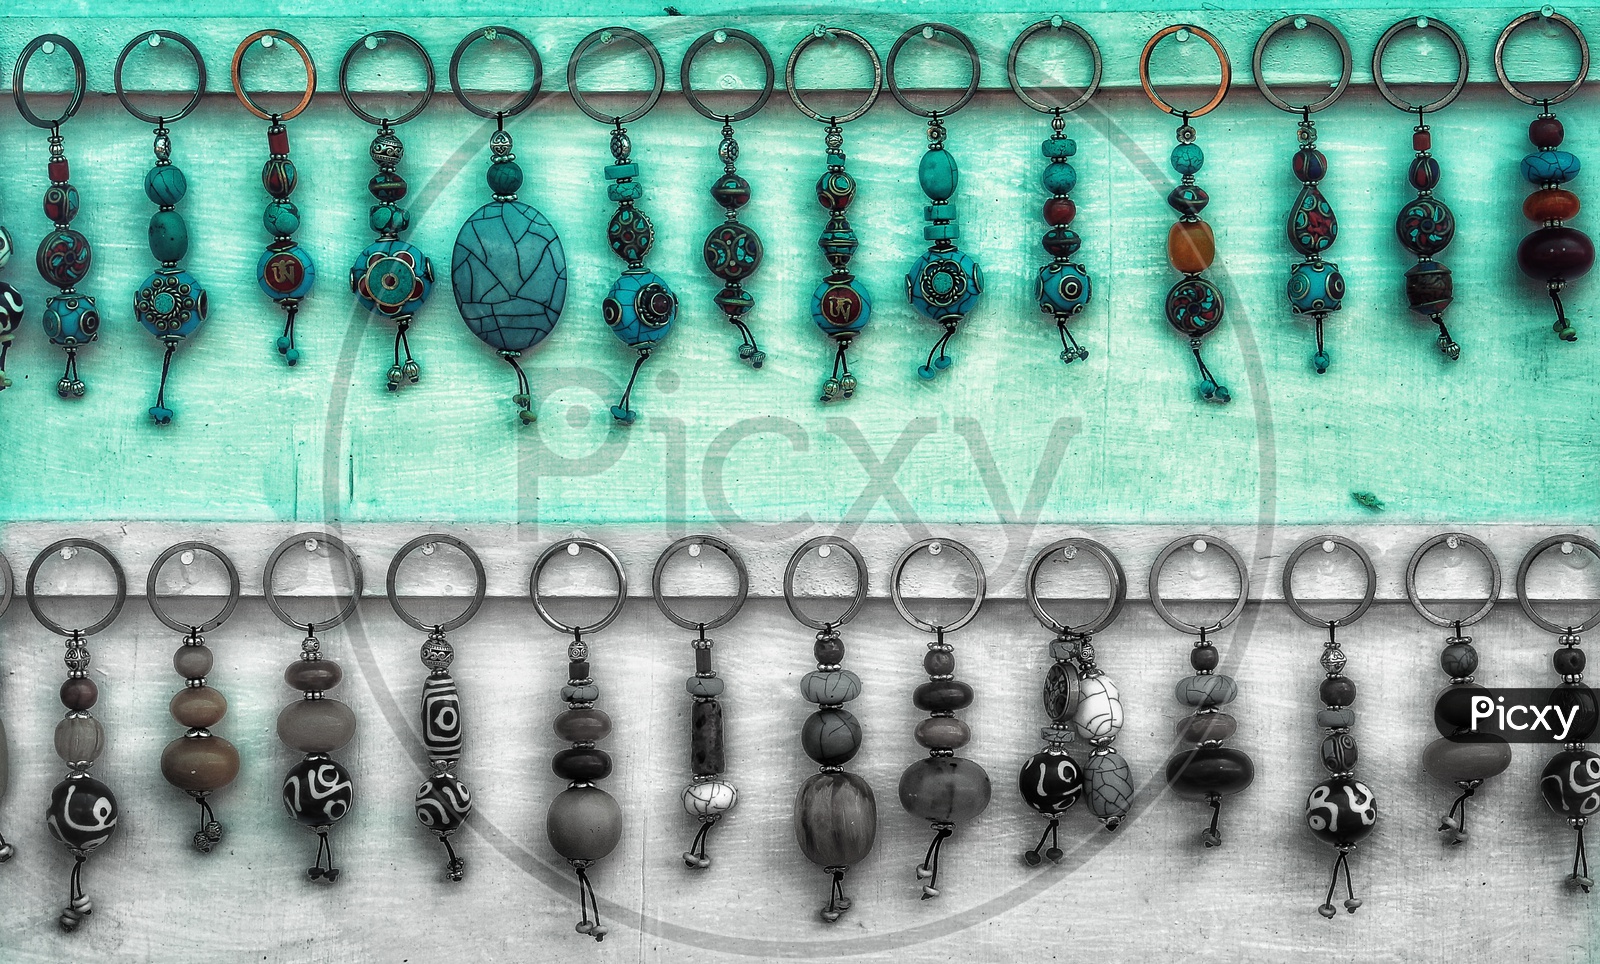 Key chains!